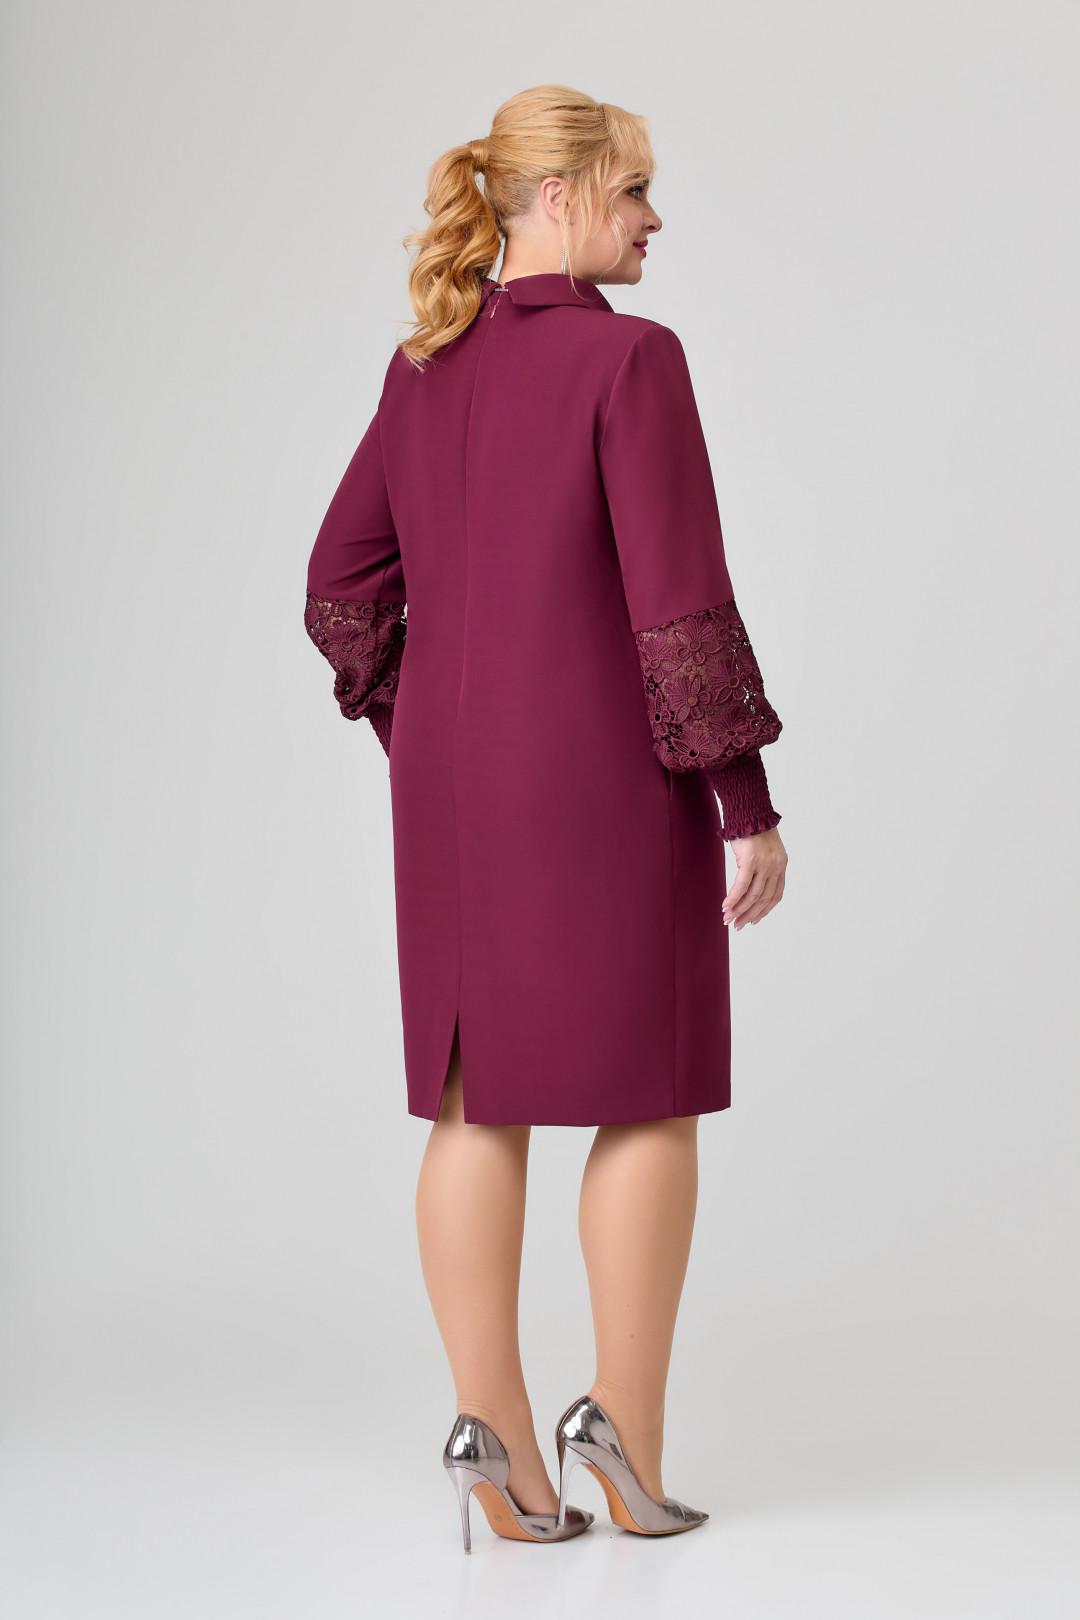 Платье Светлана-Стиль 1648 бордовый